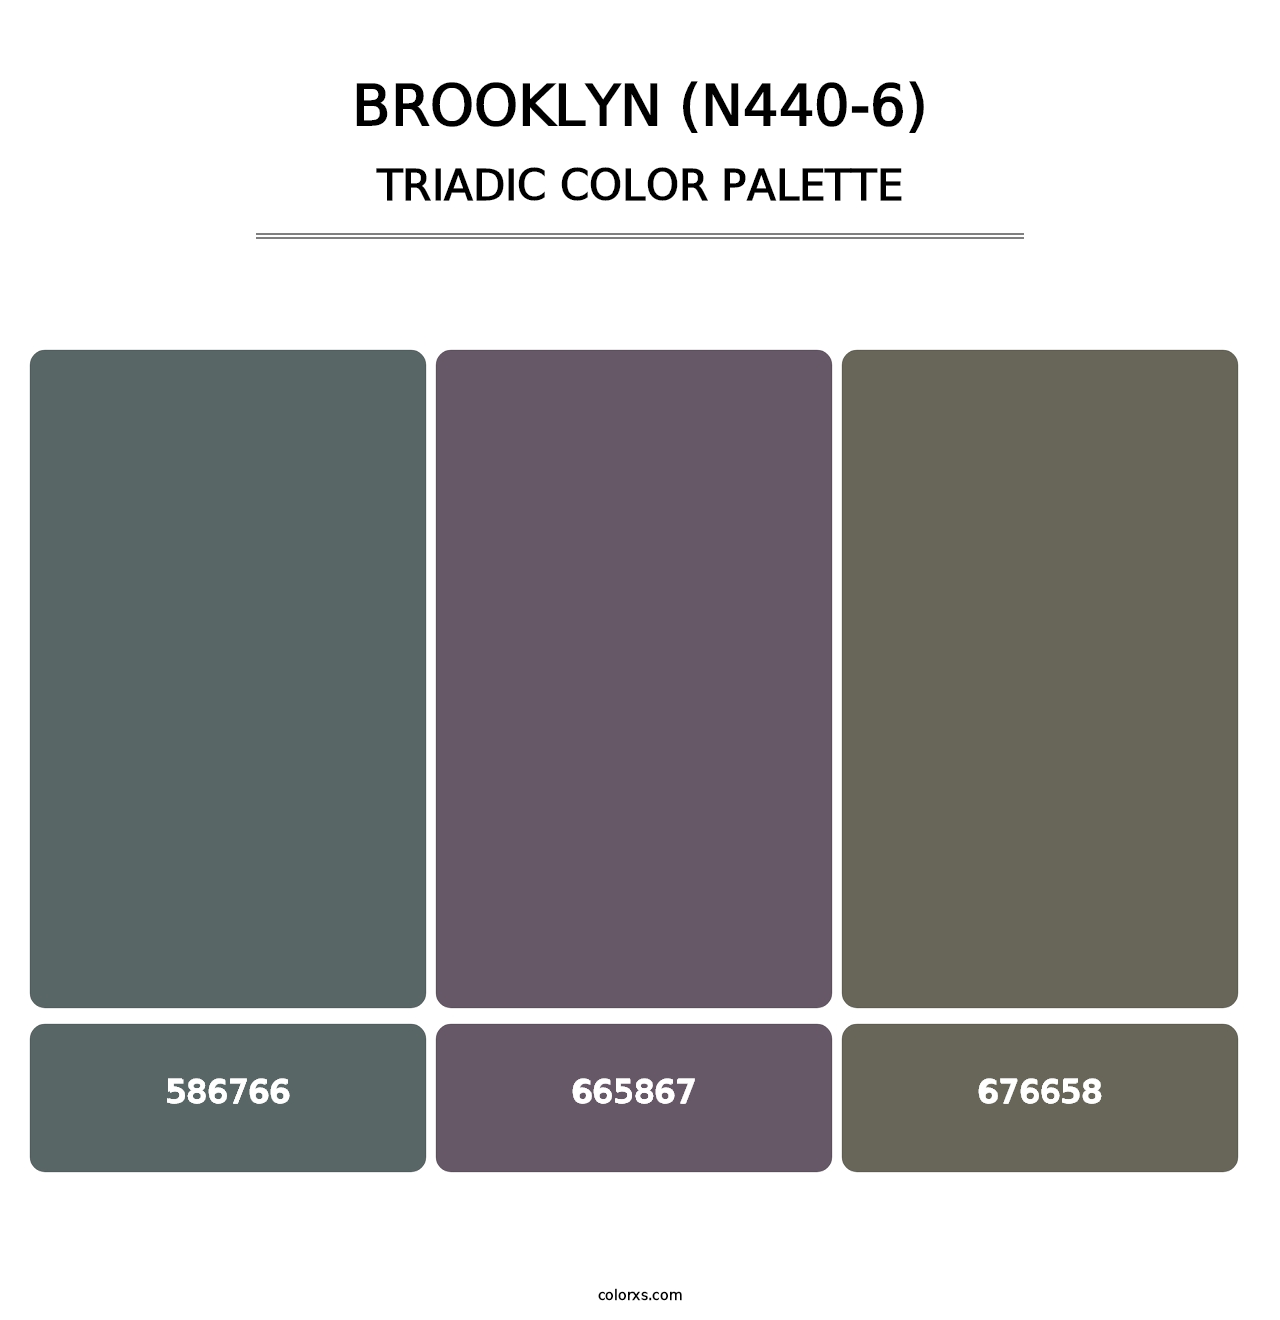 Brooklyn (N440-6) - Triadic Color Palette